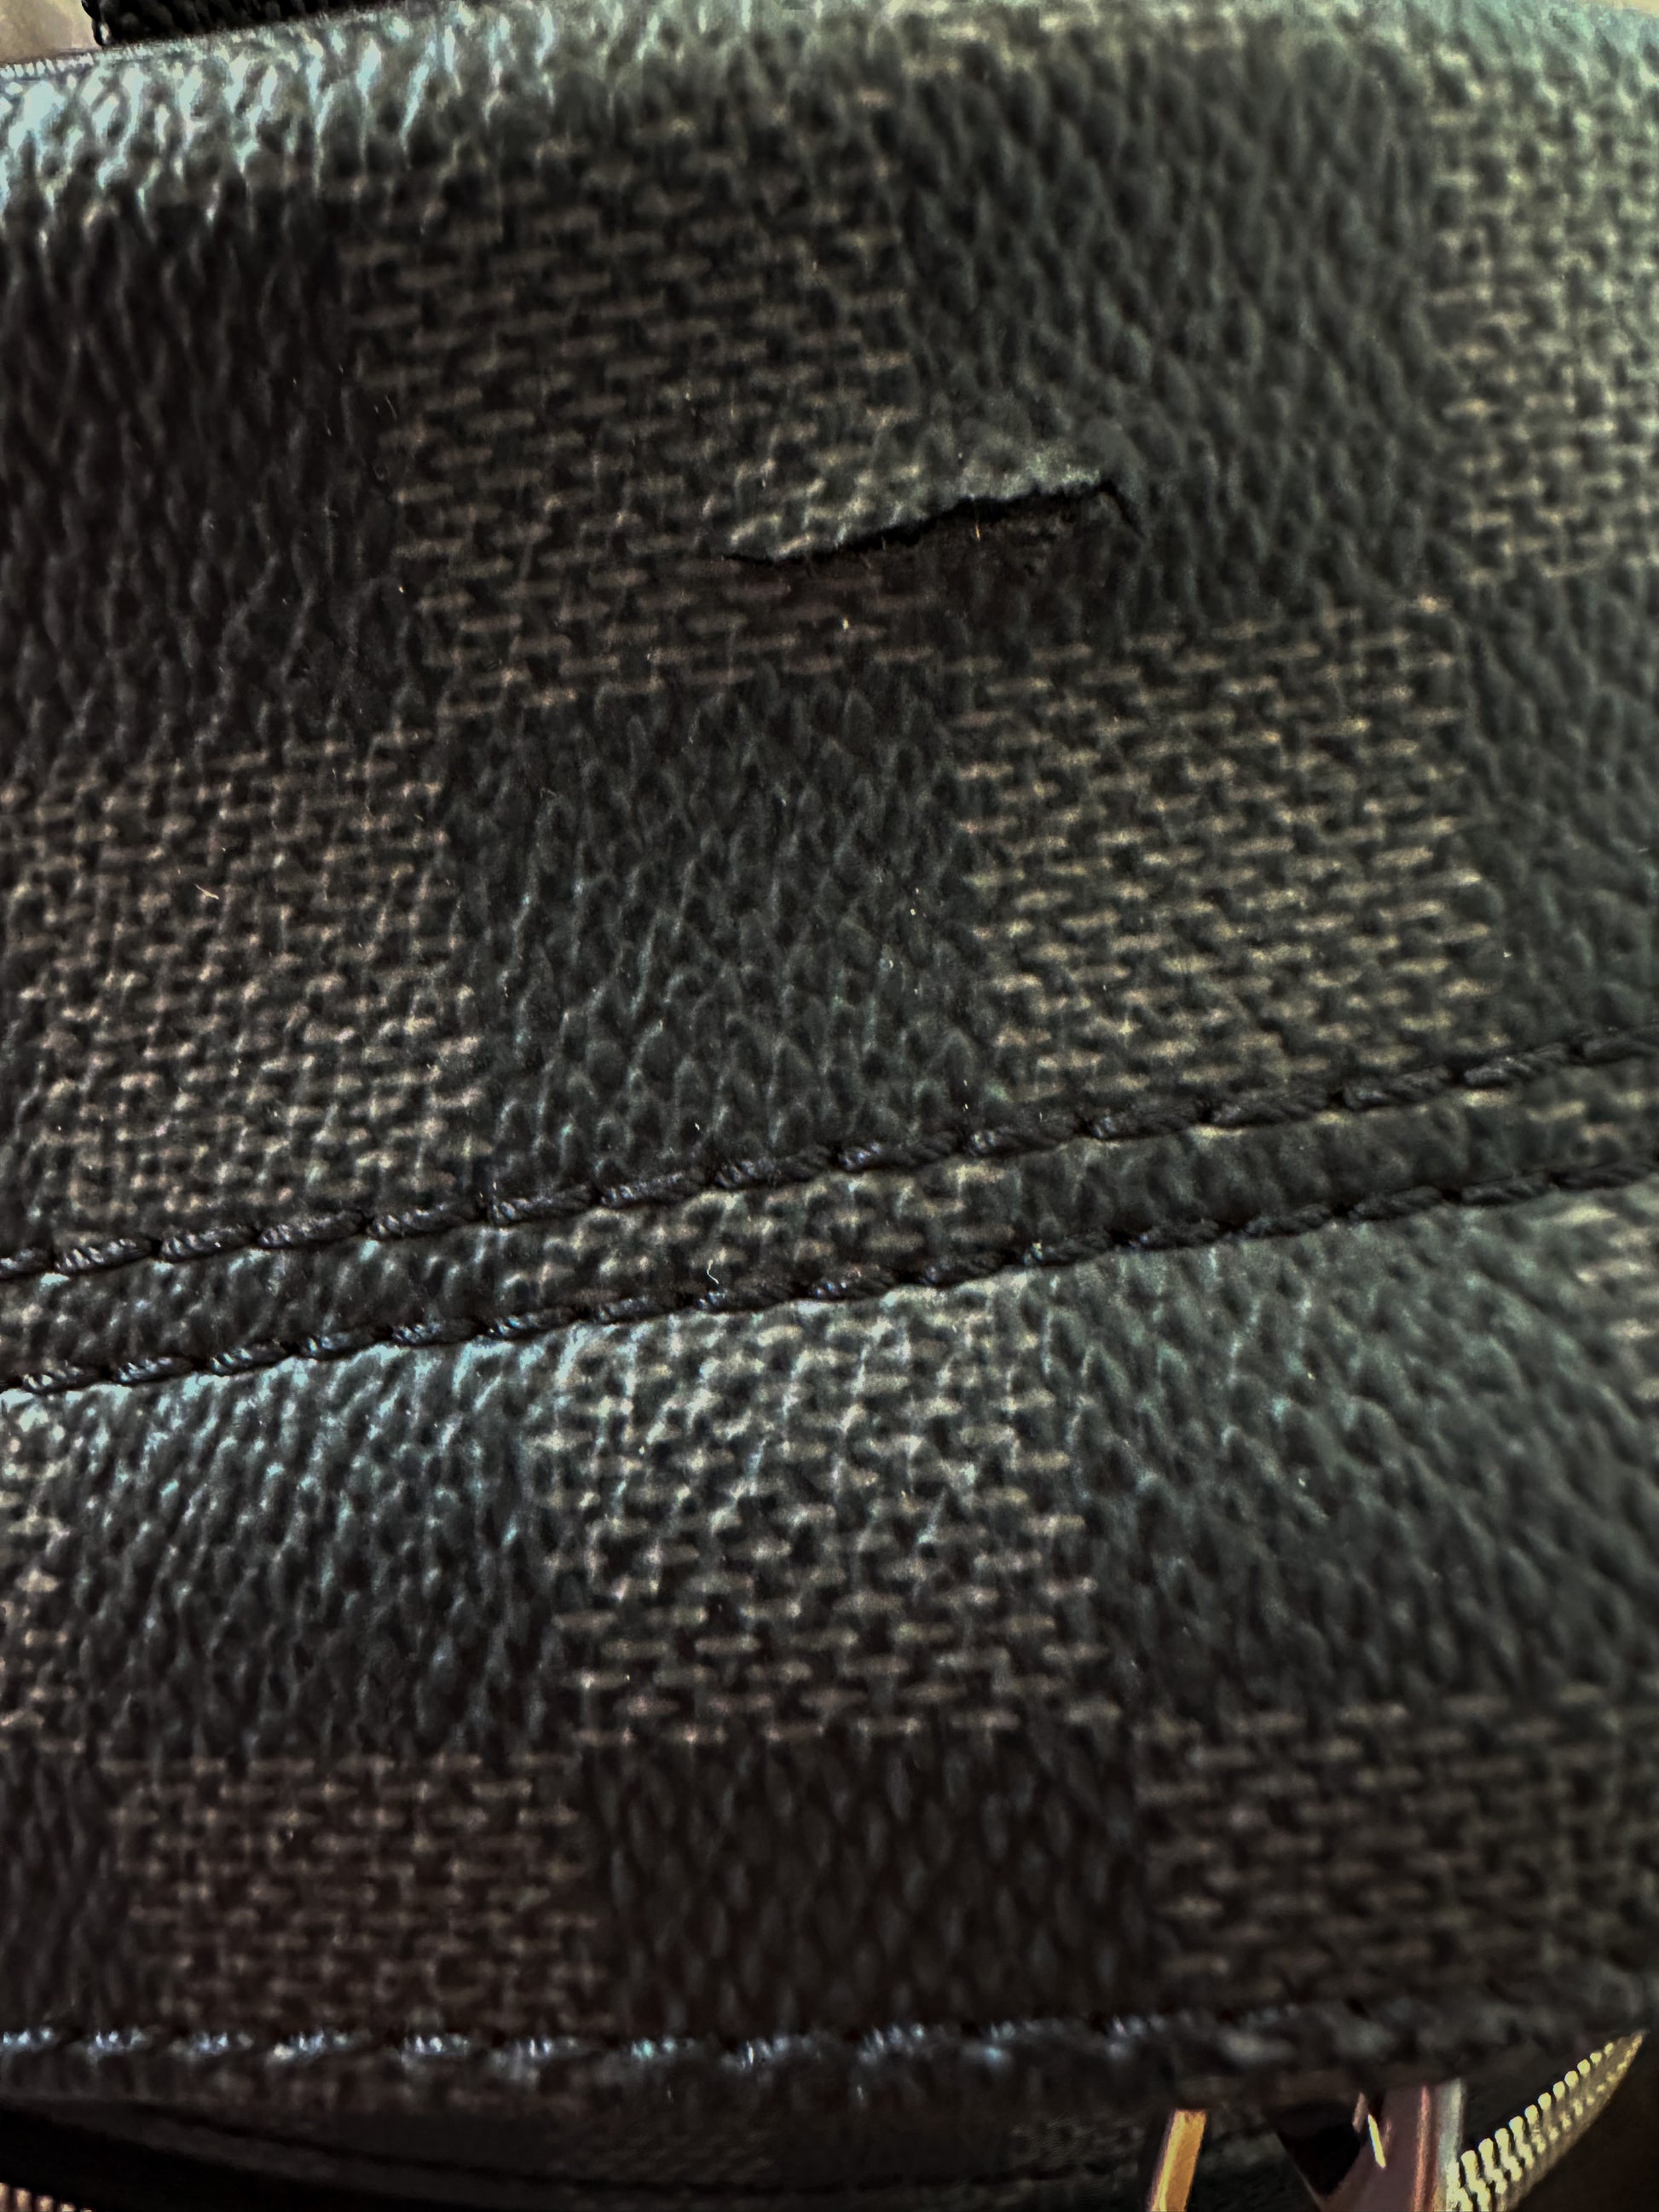 Louis Vuitton Black Damier Graphite Canvas Pattern Zippy Wallet Louis  Vuitton